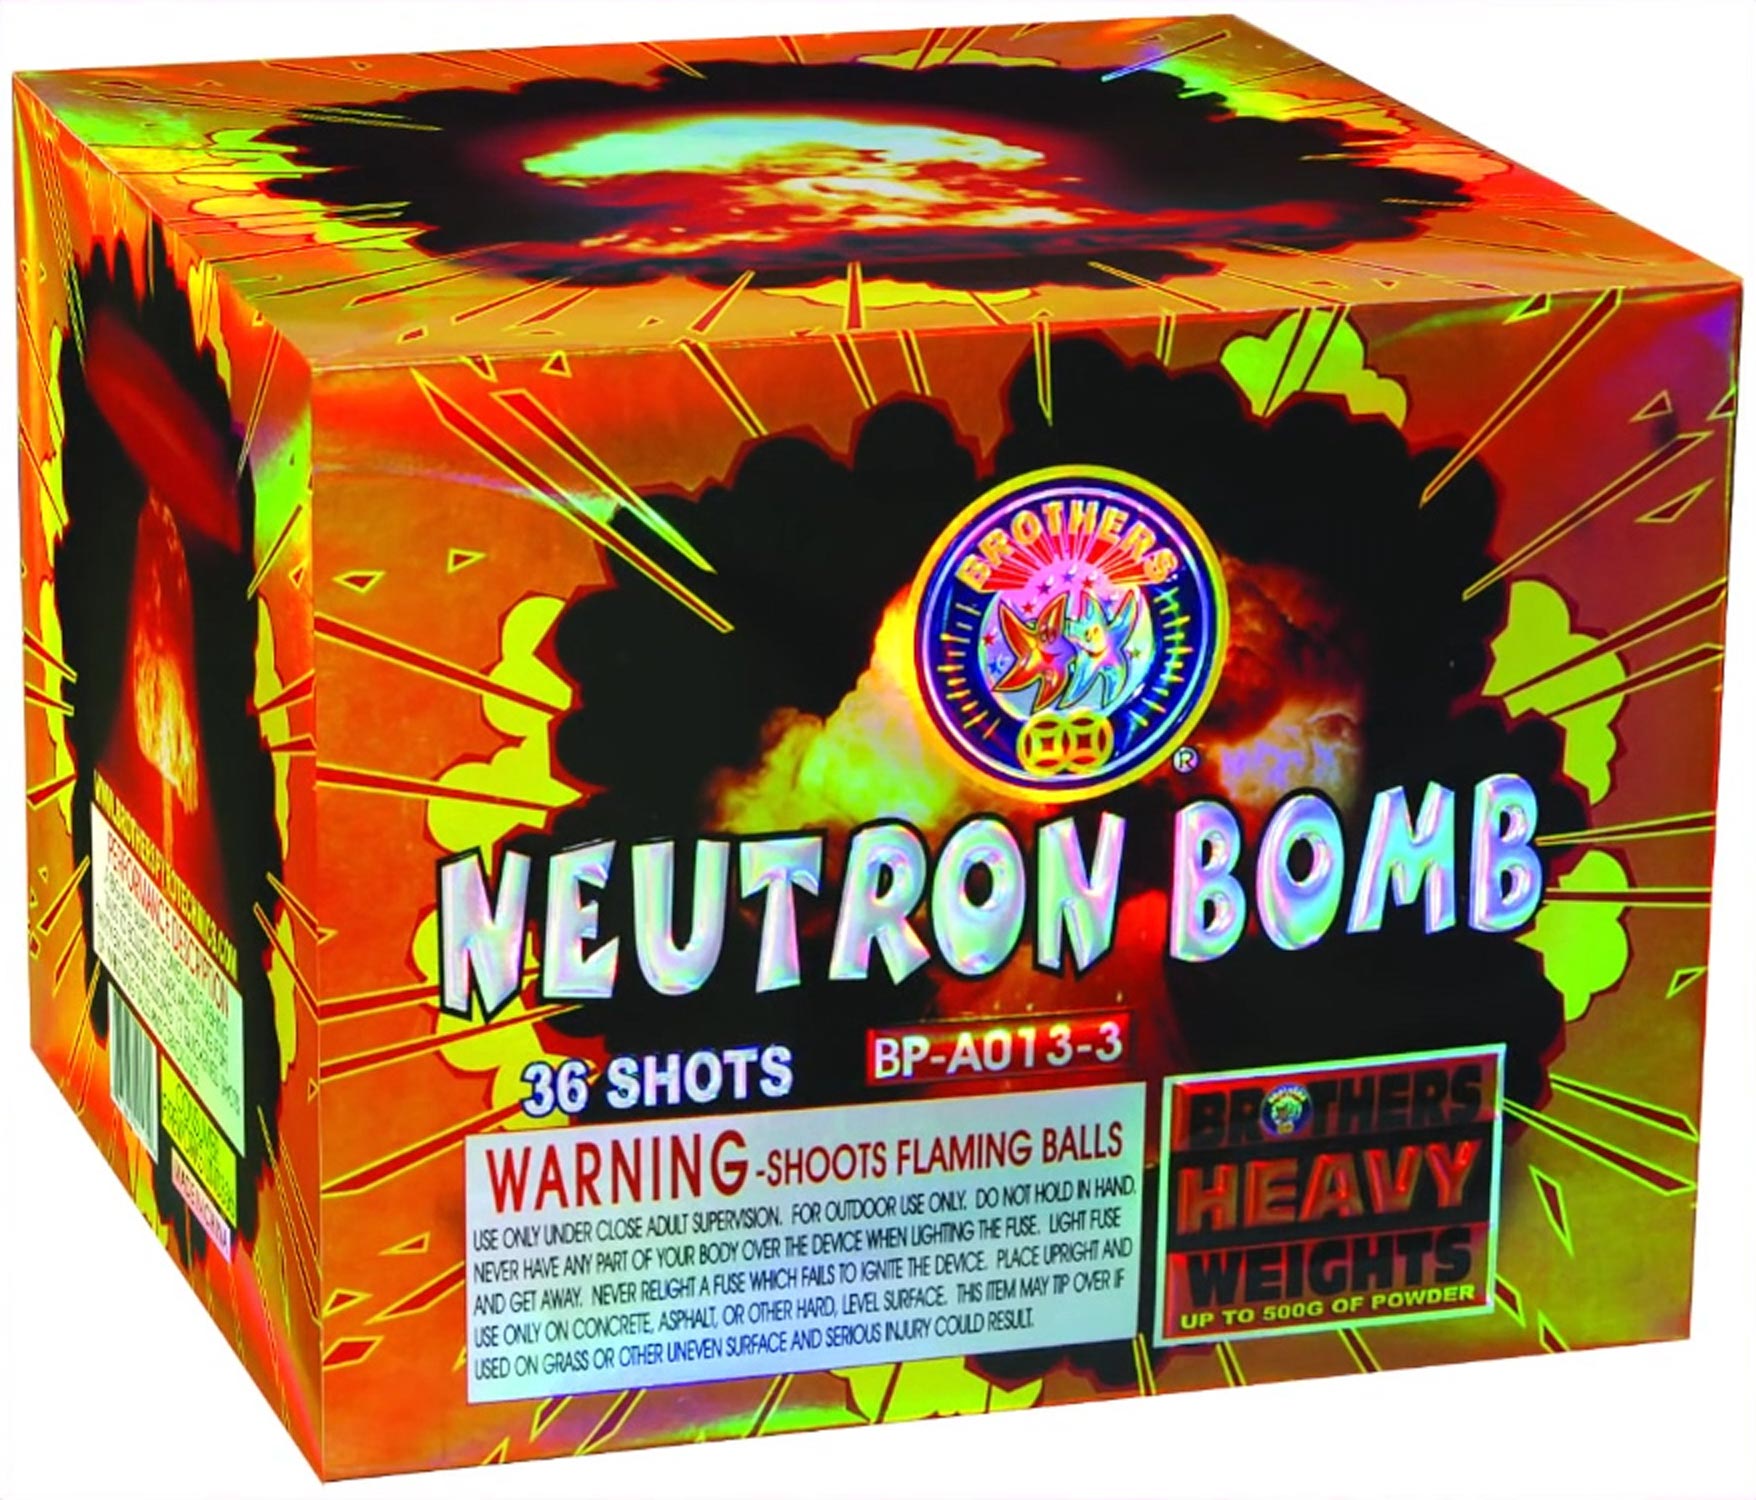 eutron bomb